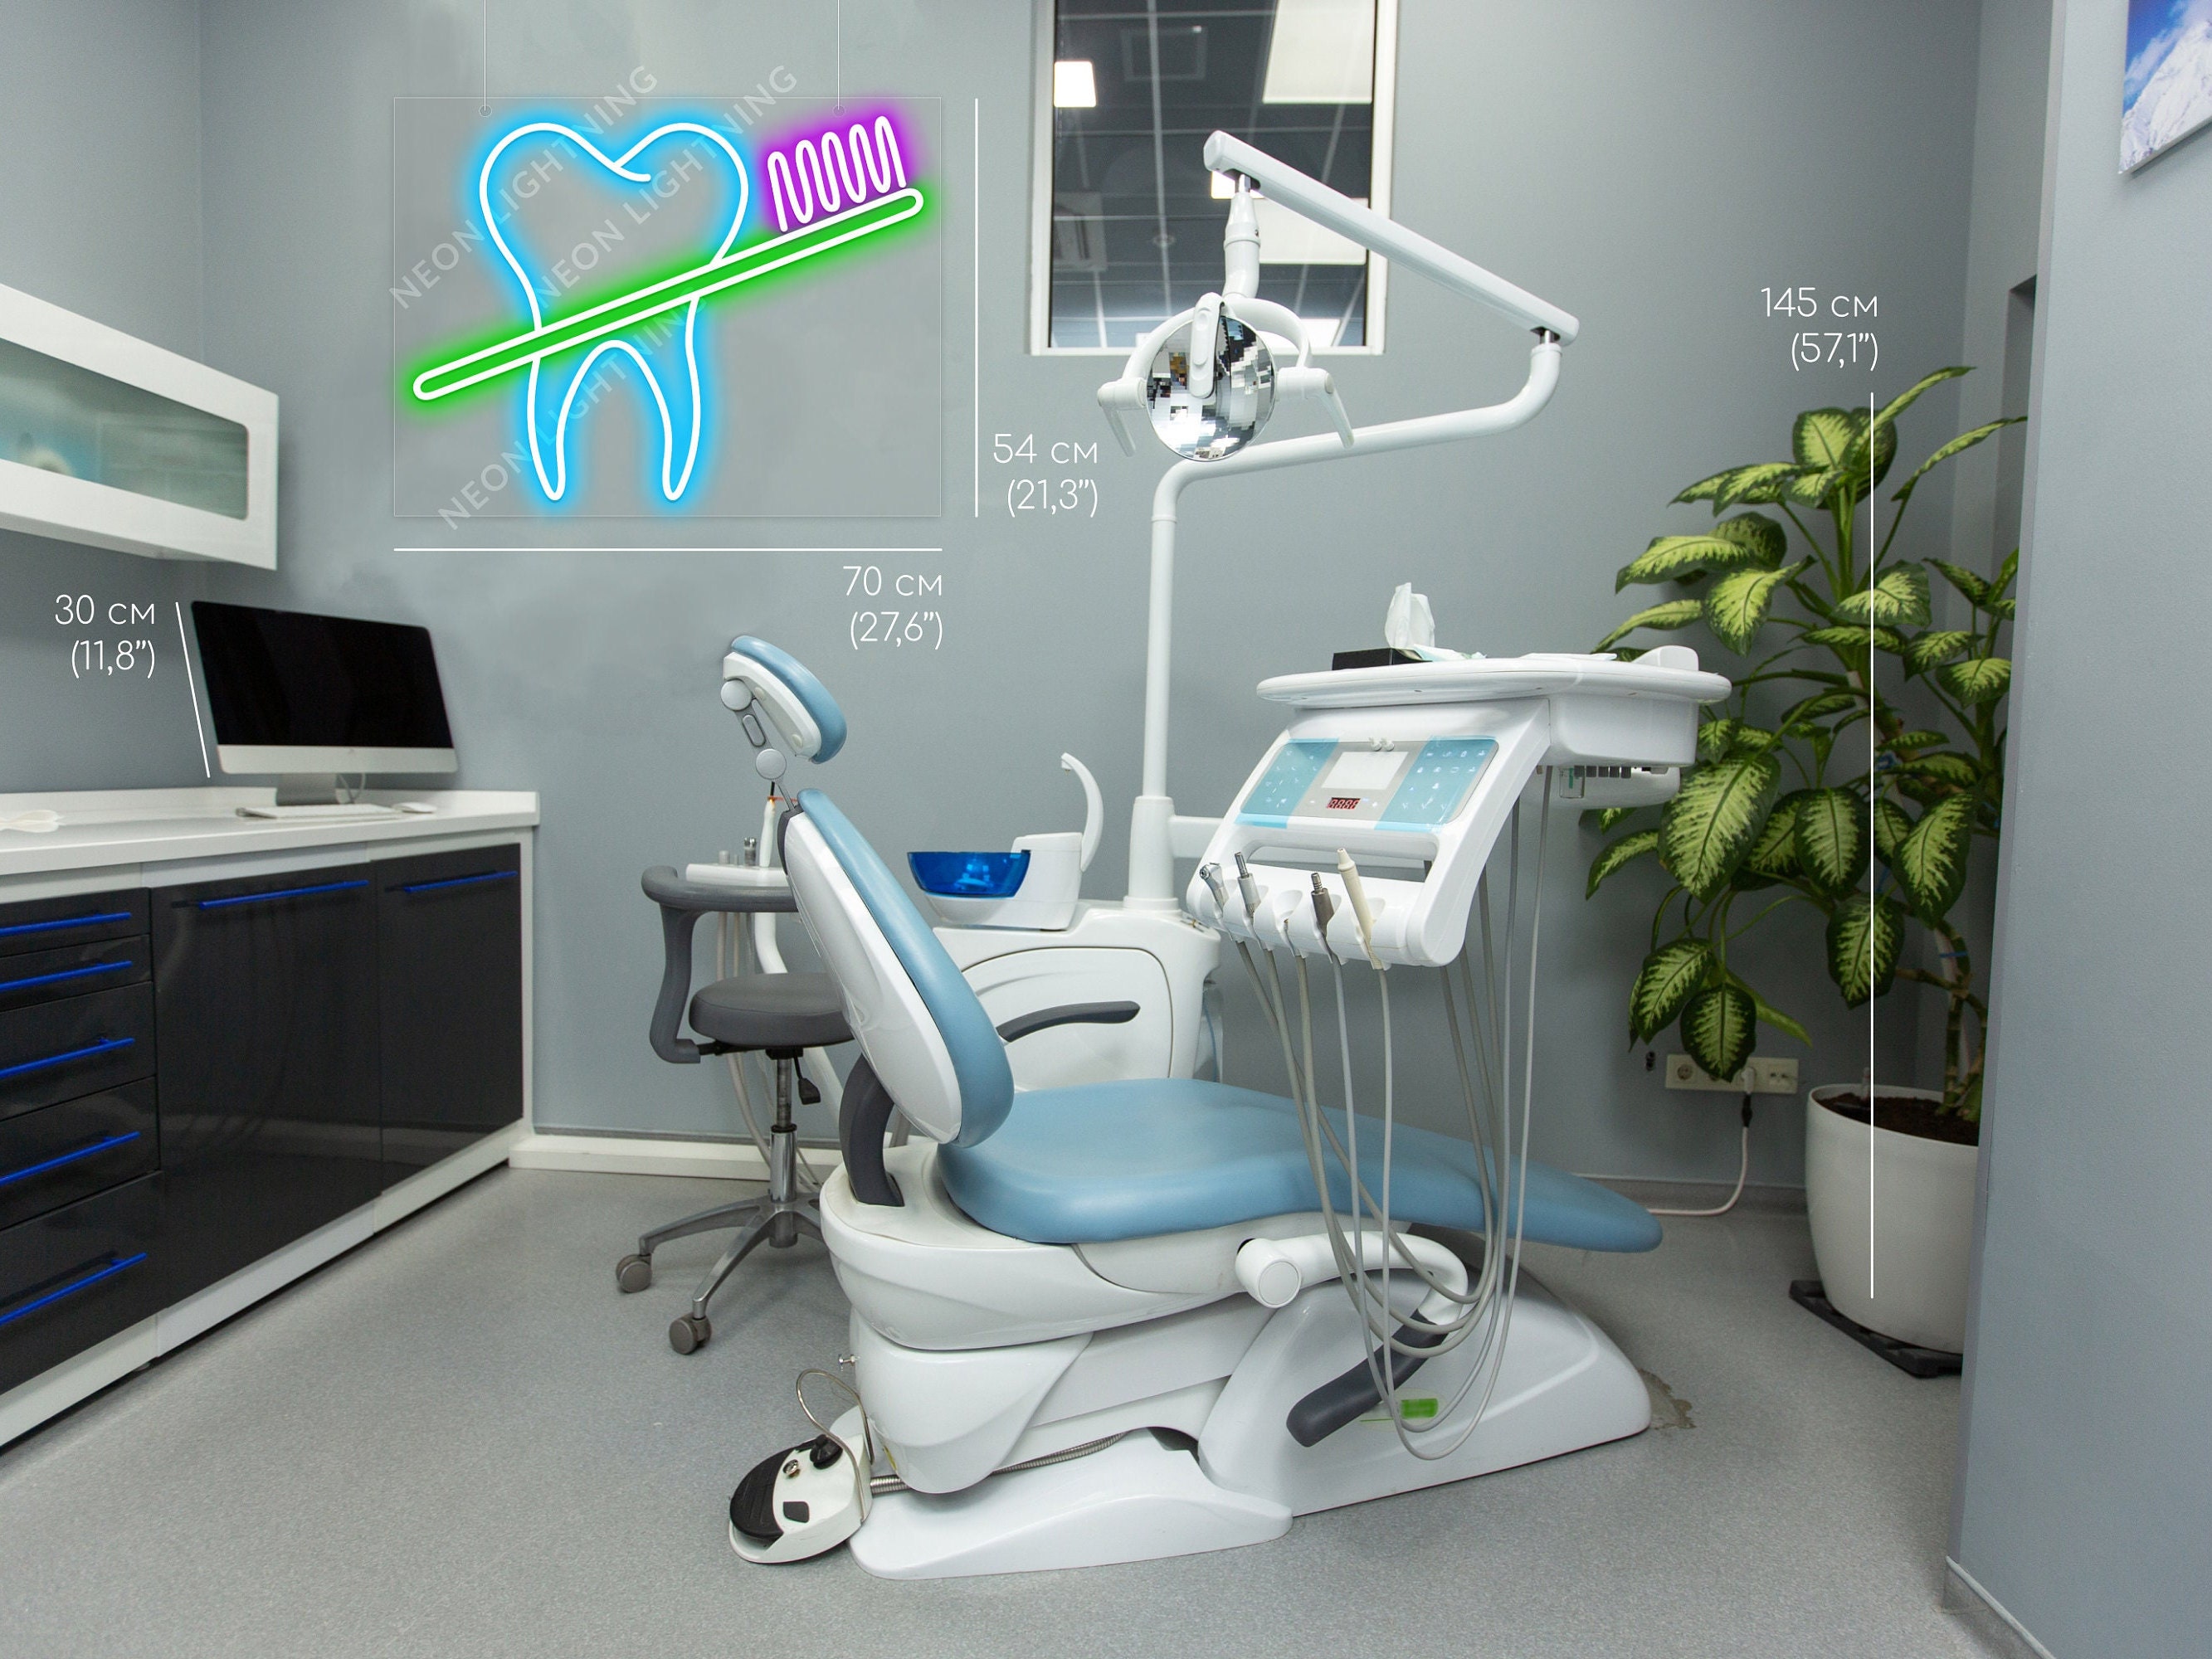 Zahn Neon Schild, starke Zahn wirft Hantel geführt Neon, Zahn mit Klammern  LED Licht, Zahnarzt Licht Wand Dekor, Zahn Klinik Zeichen - .de